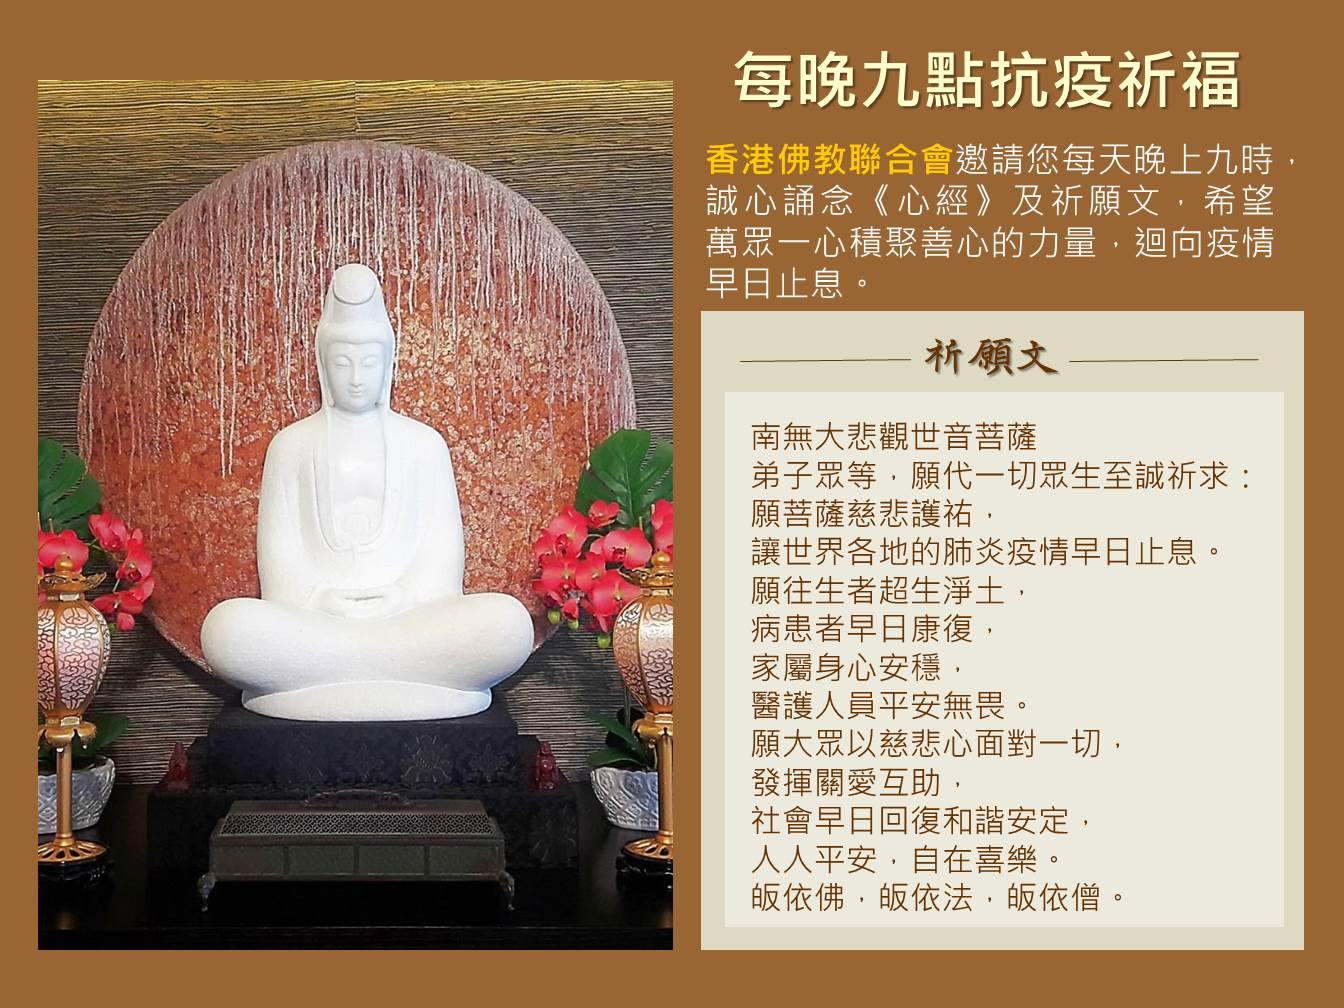 香港佛教聯合會 弘法活動 抗疫同心 資訊站